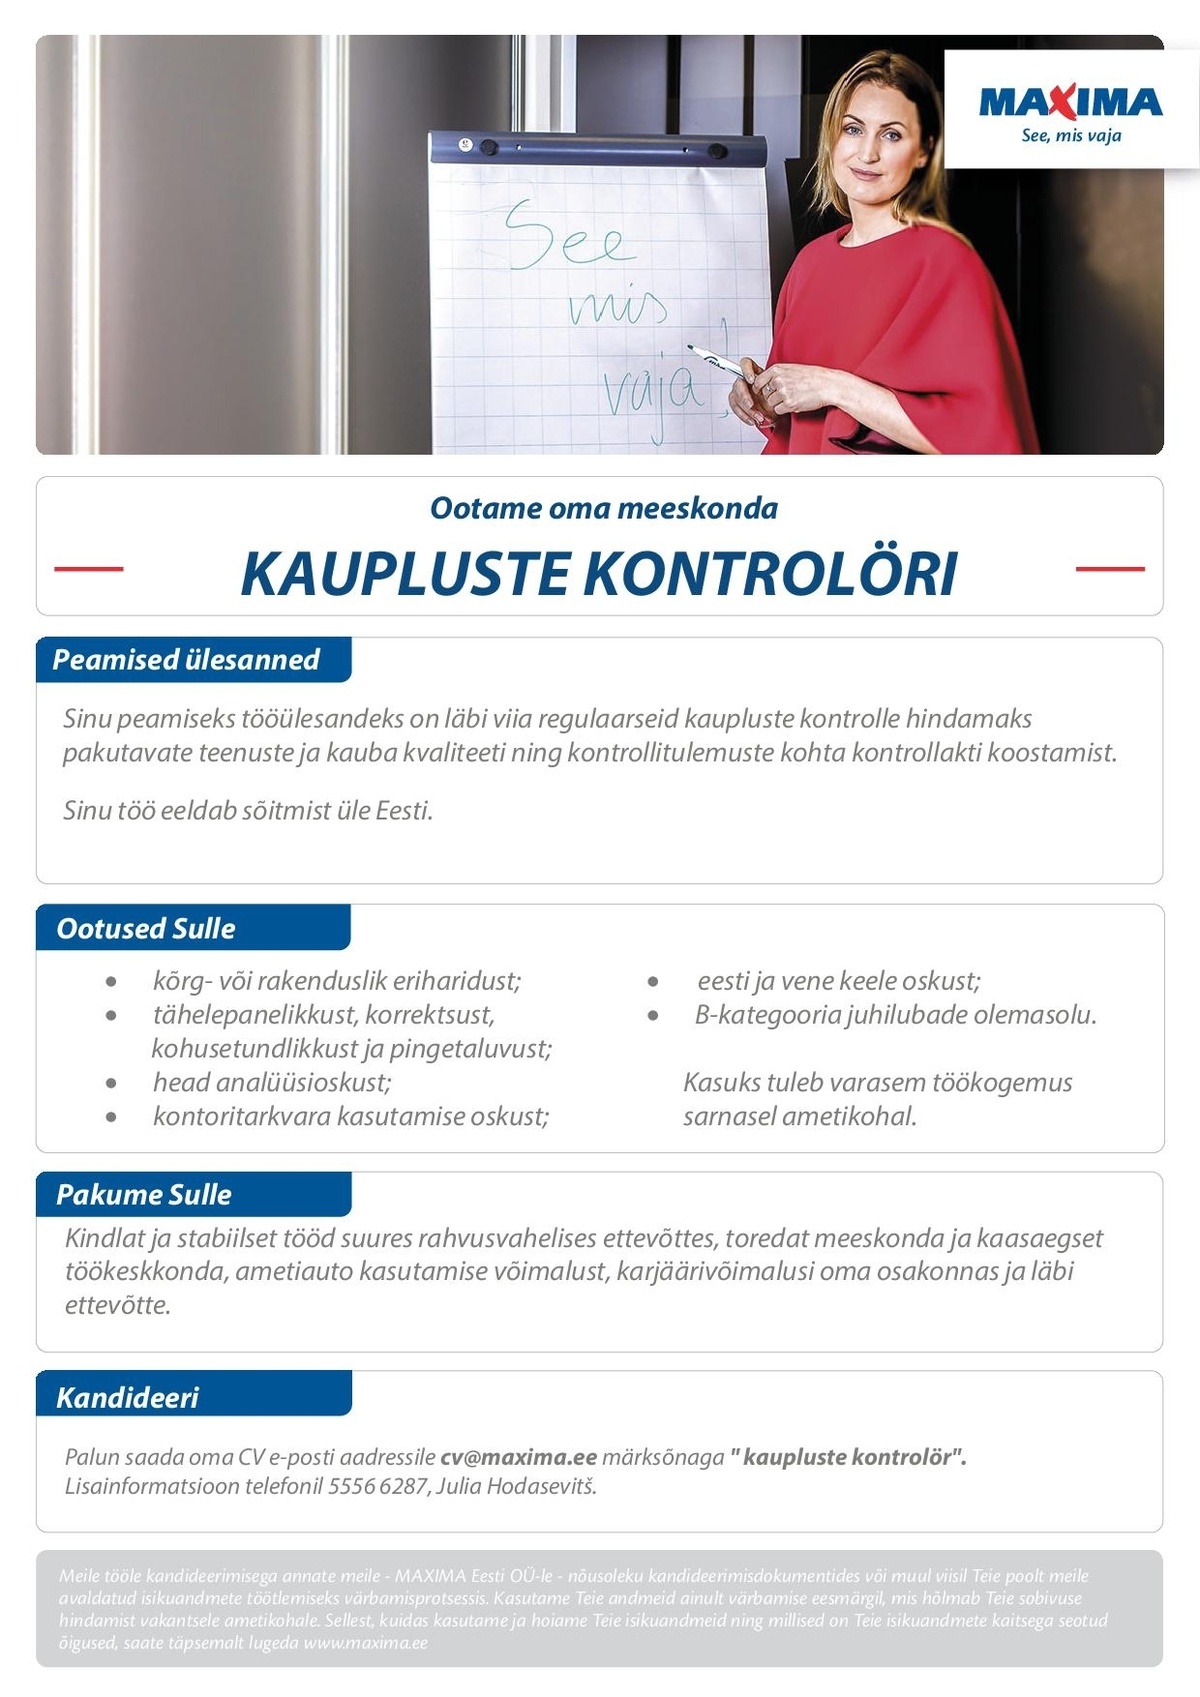 Maxima Eesti OÜ Kaupluste kontrolör